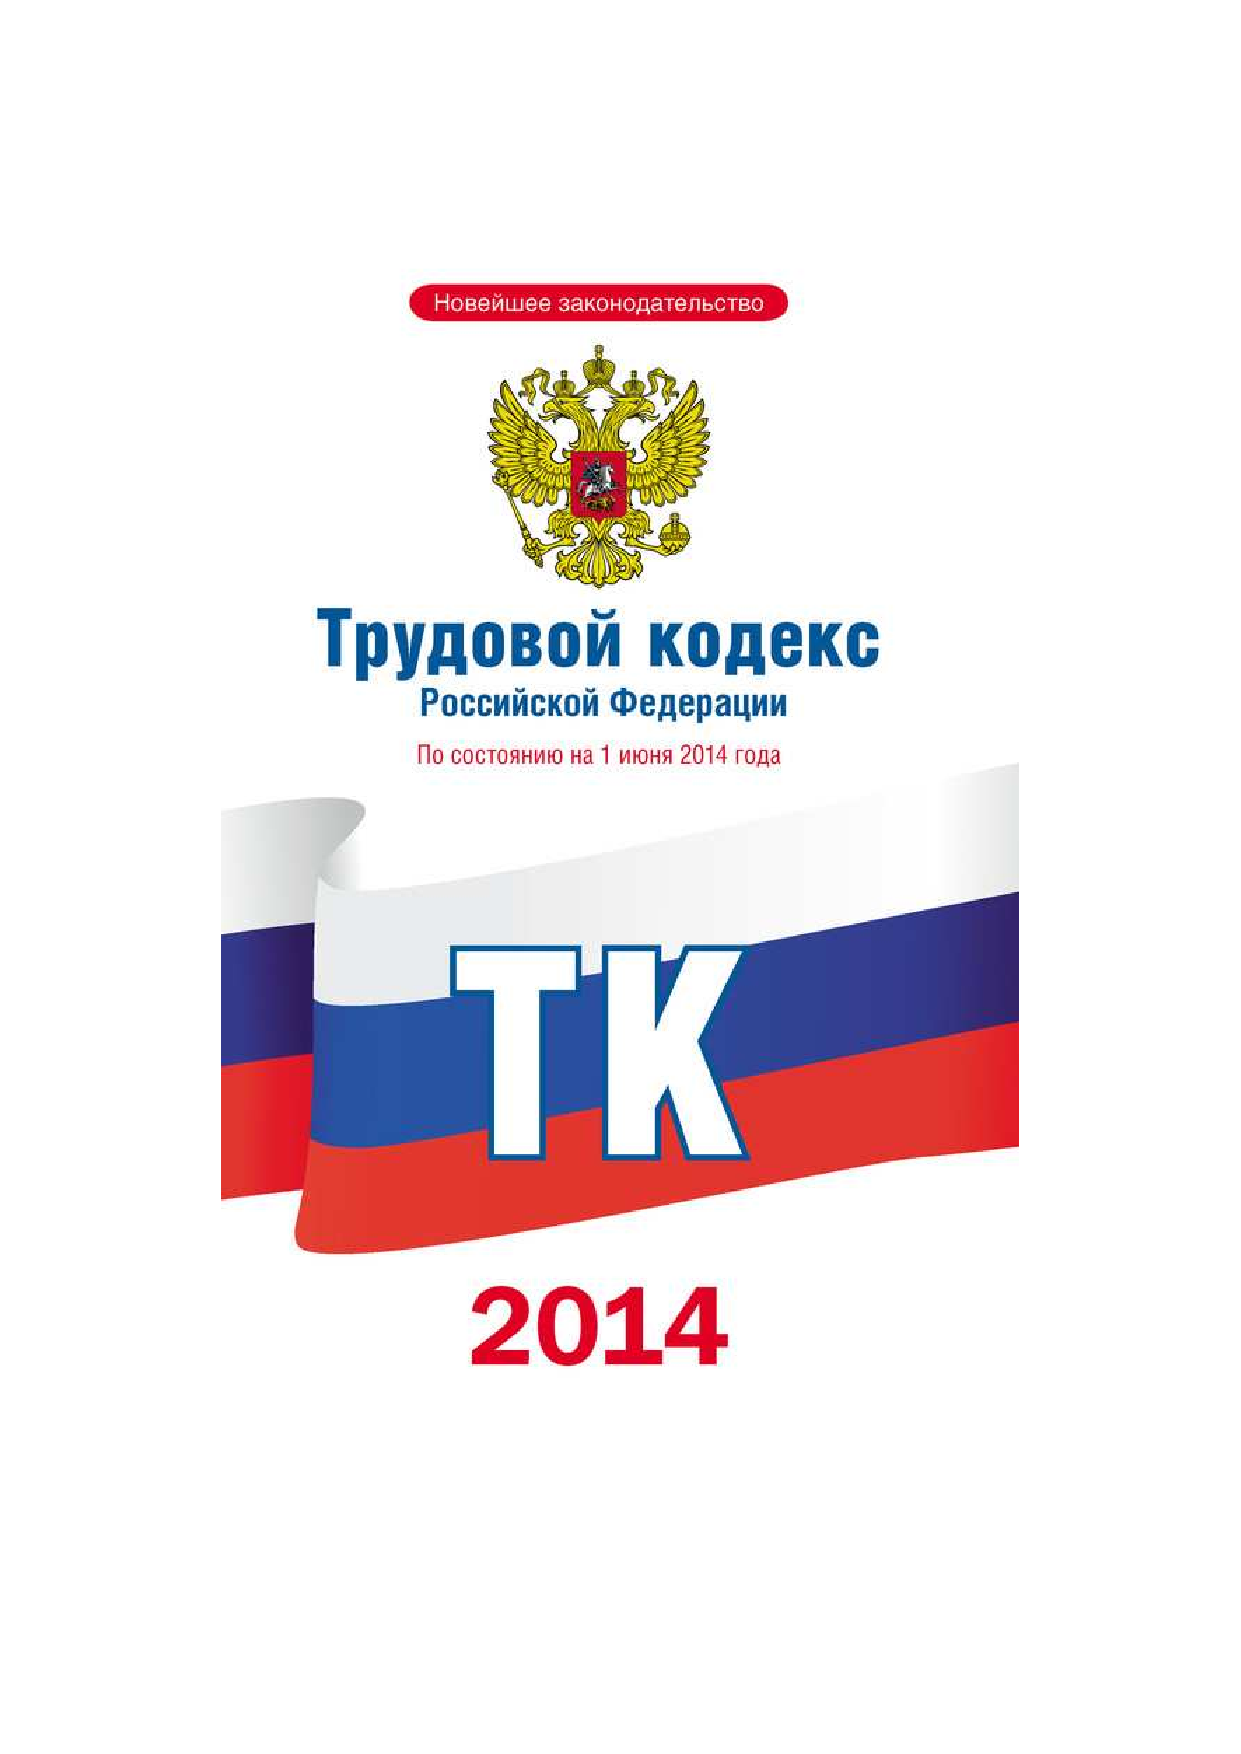  Трудовой кодекс Российской Федерации по состоянию на 1 июня 2014 года - страница 1